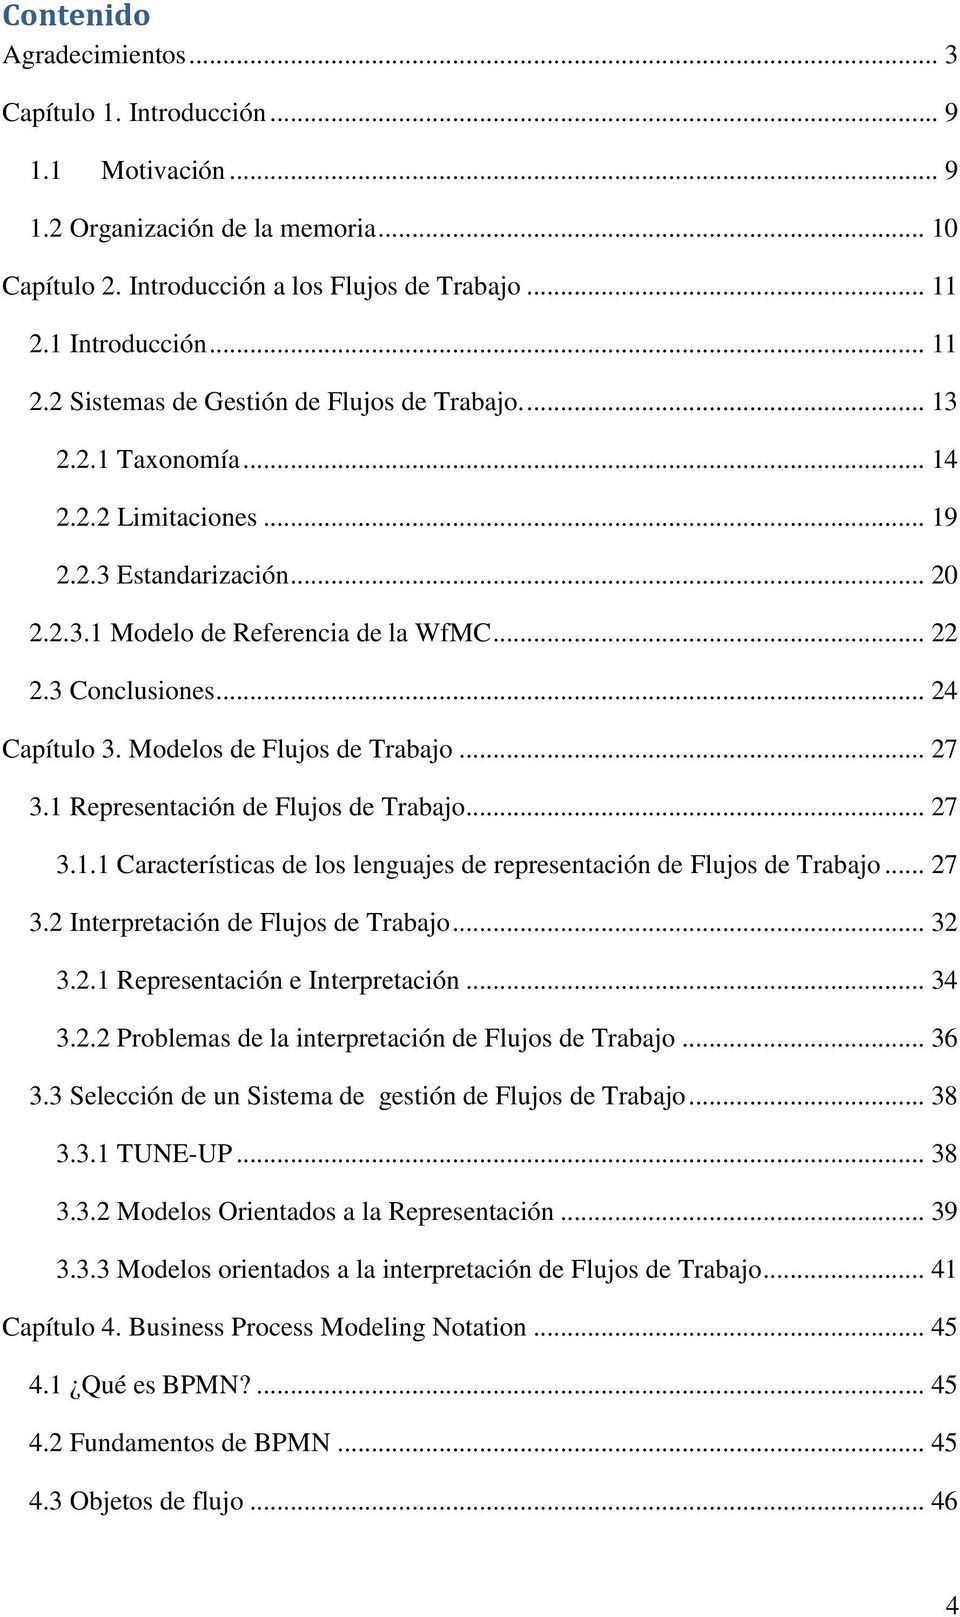 3 Conclusiones... 24 Capítulo 3. Modelos de Flujos de Trabajo... 27 3.1 Representación de Flujos de Trabajo... 27 3.1.1 Características de los lenguajes de representación de Flujos de Trabajo... 27 3.2 Interpretación de Flujos de Trabajo.